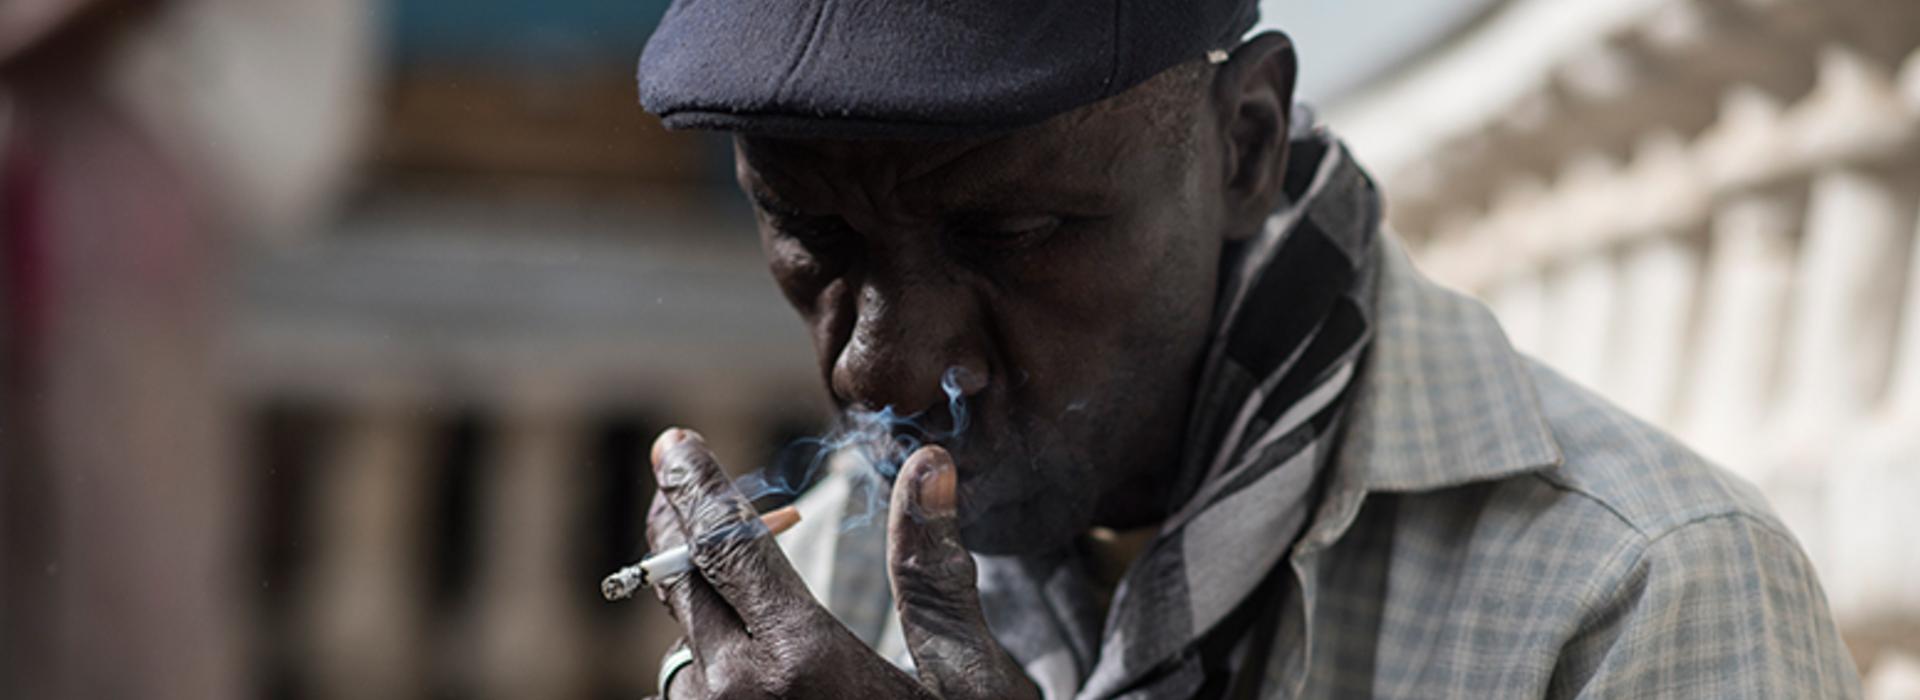 Communiqué de presse sur les résultats de l'analyse en teneur de nicotine, de goudron et de monoxyde de carbone de cigarettes vendues au Sénégal